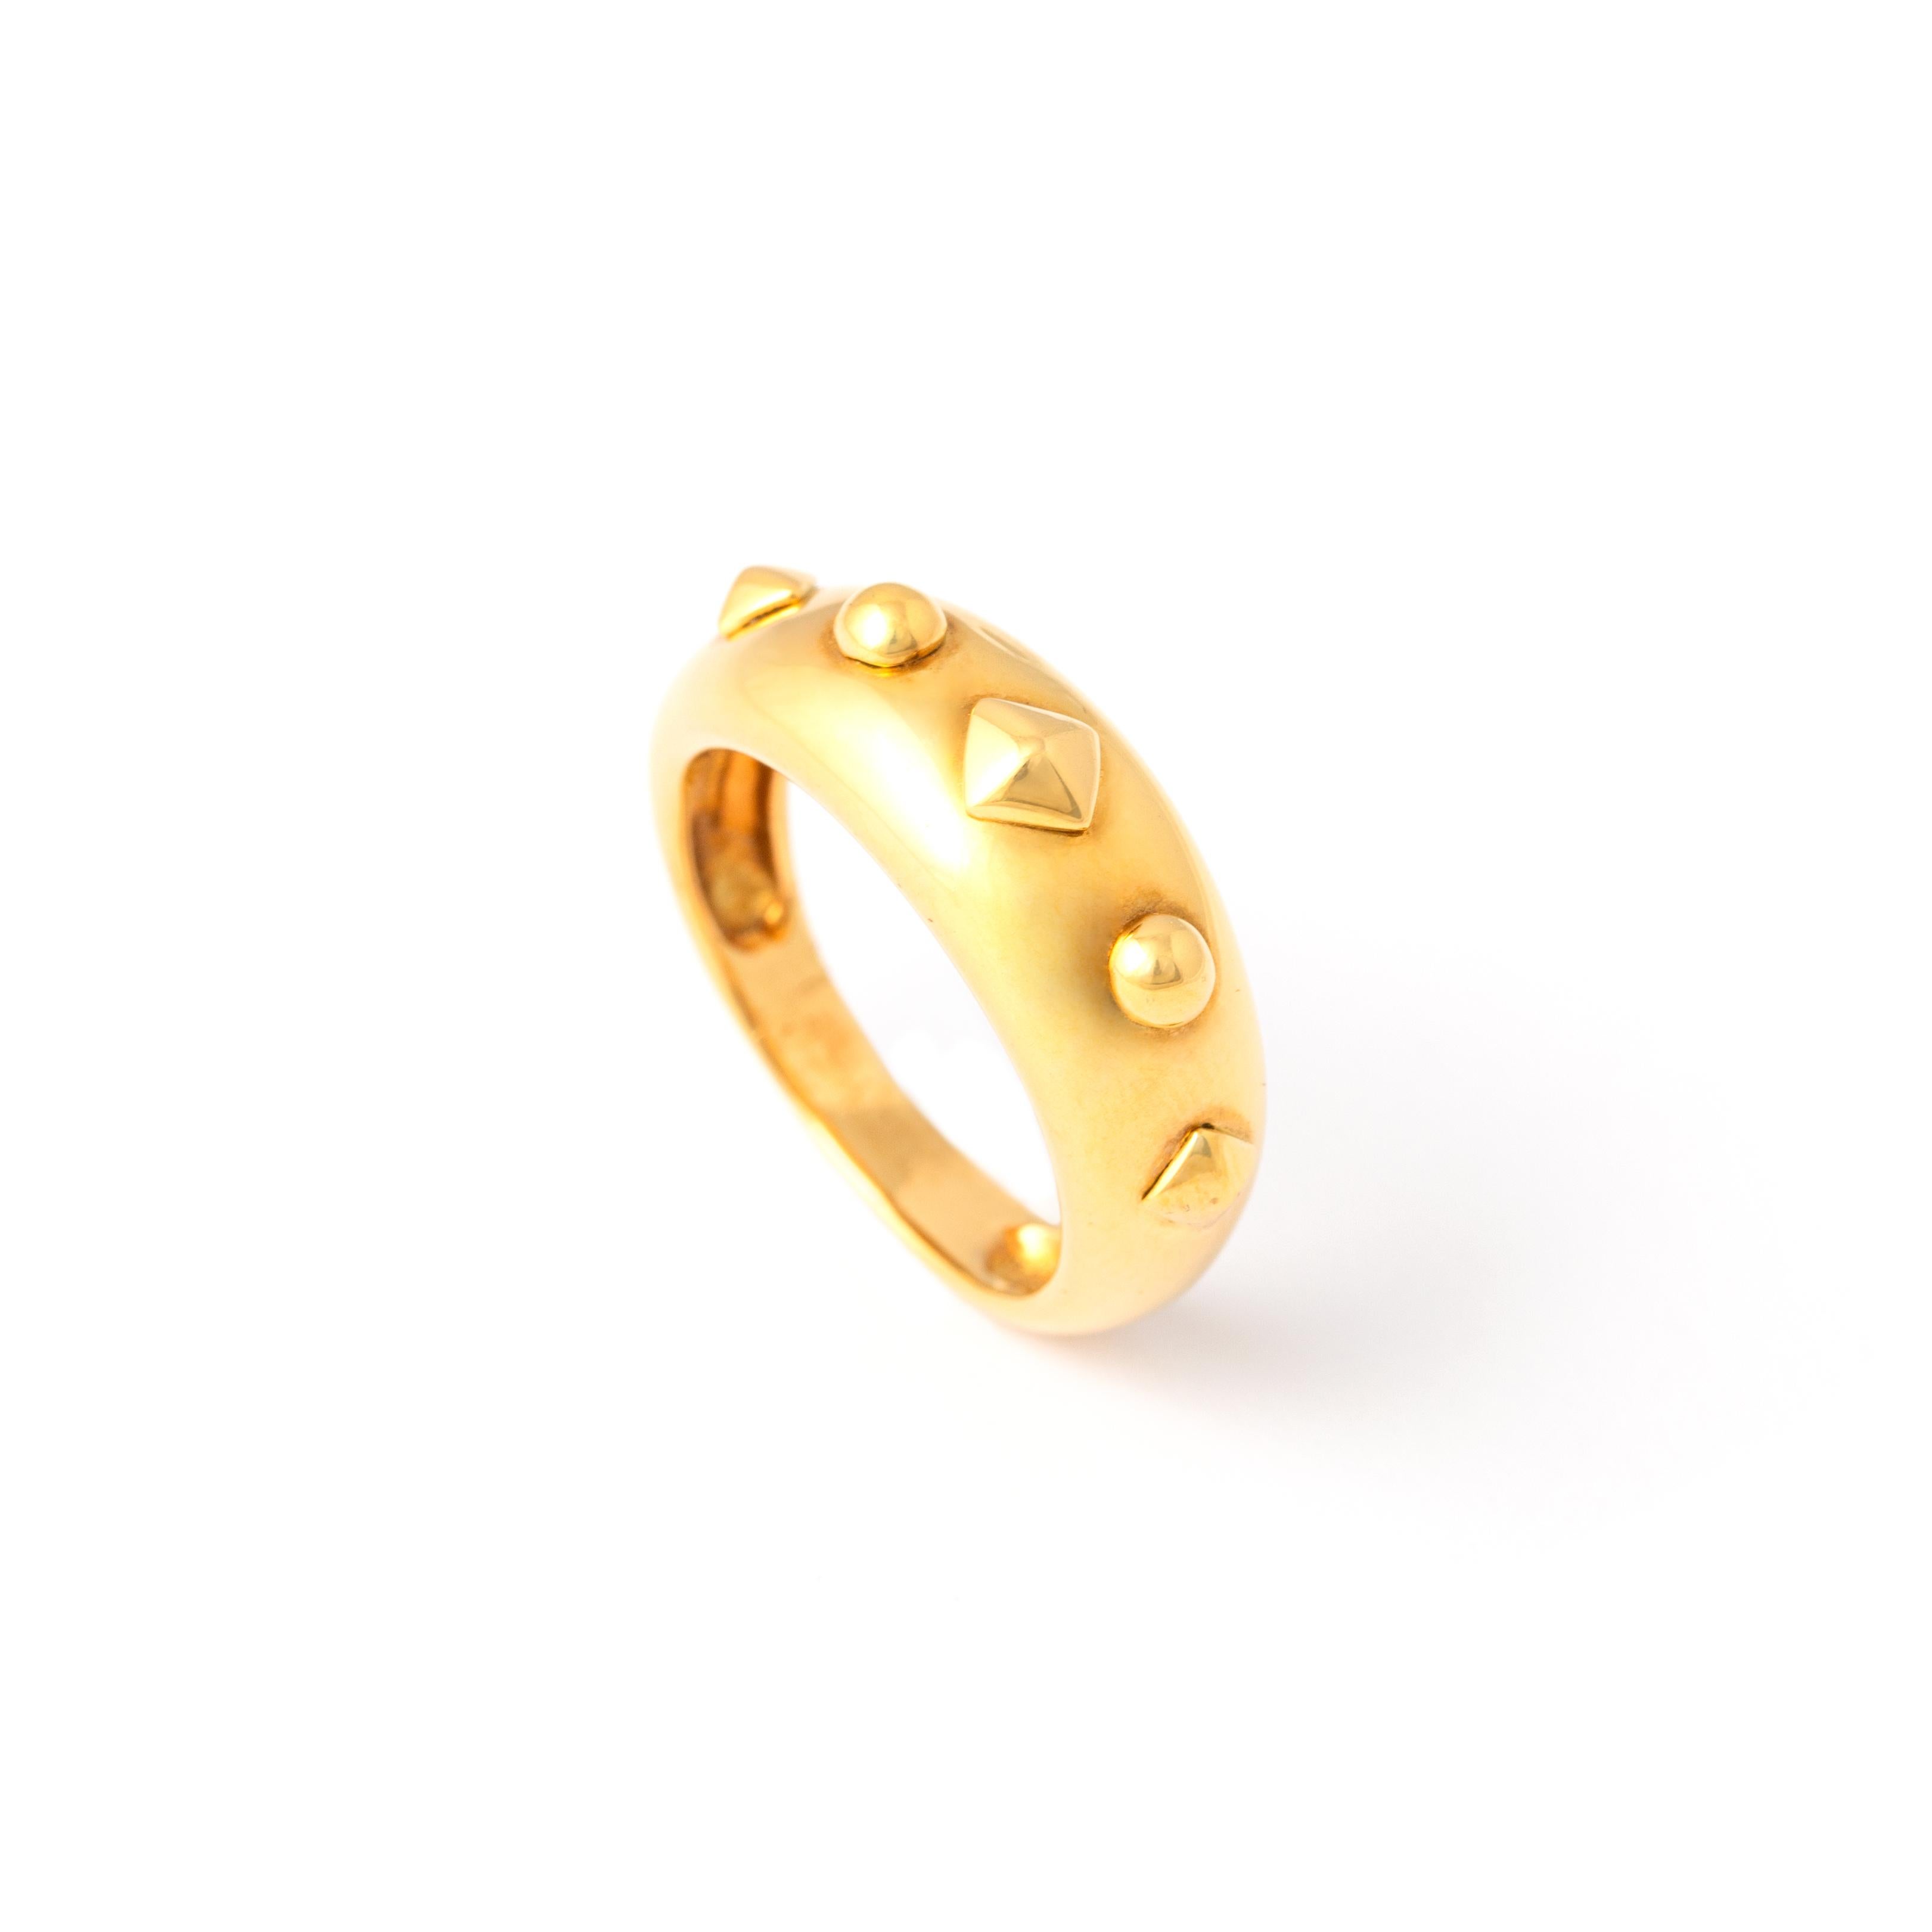 Diamant-Gelbgold 18K Ring.
Ende des 20. Jahrhunderts.
Größe: 54
Gesamtgewicht: 6,55 Gramm.